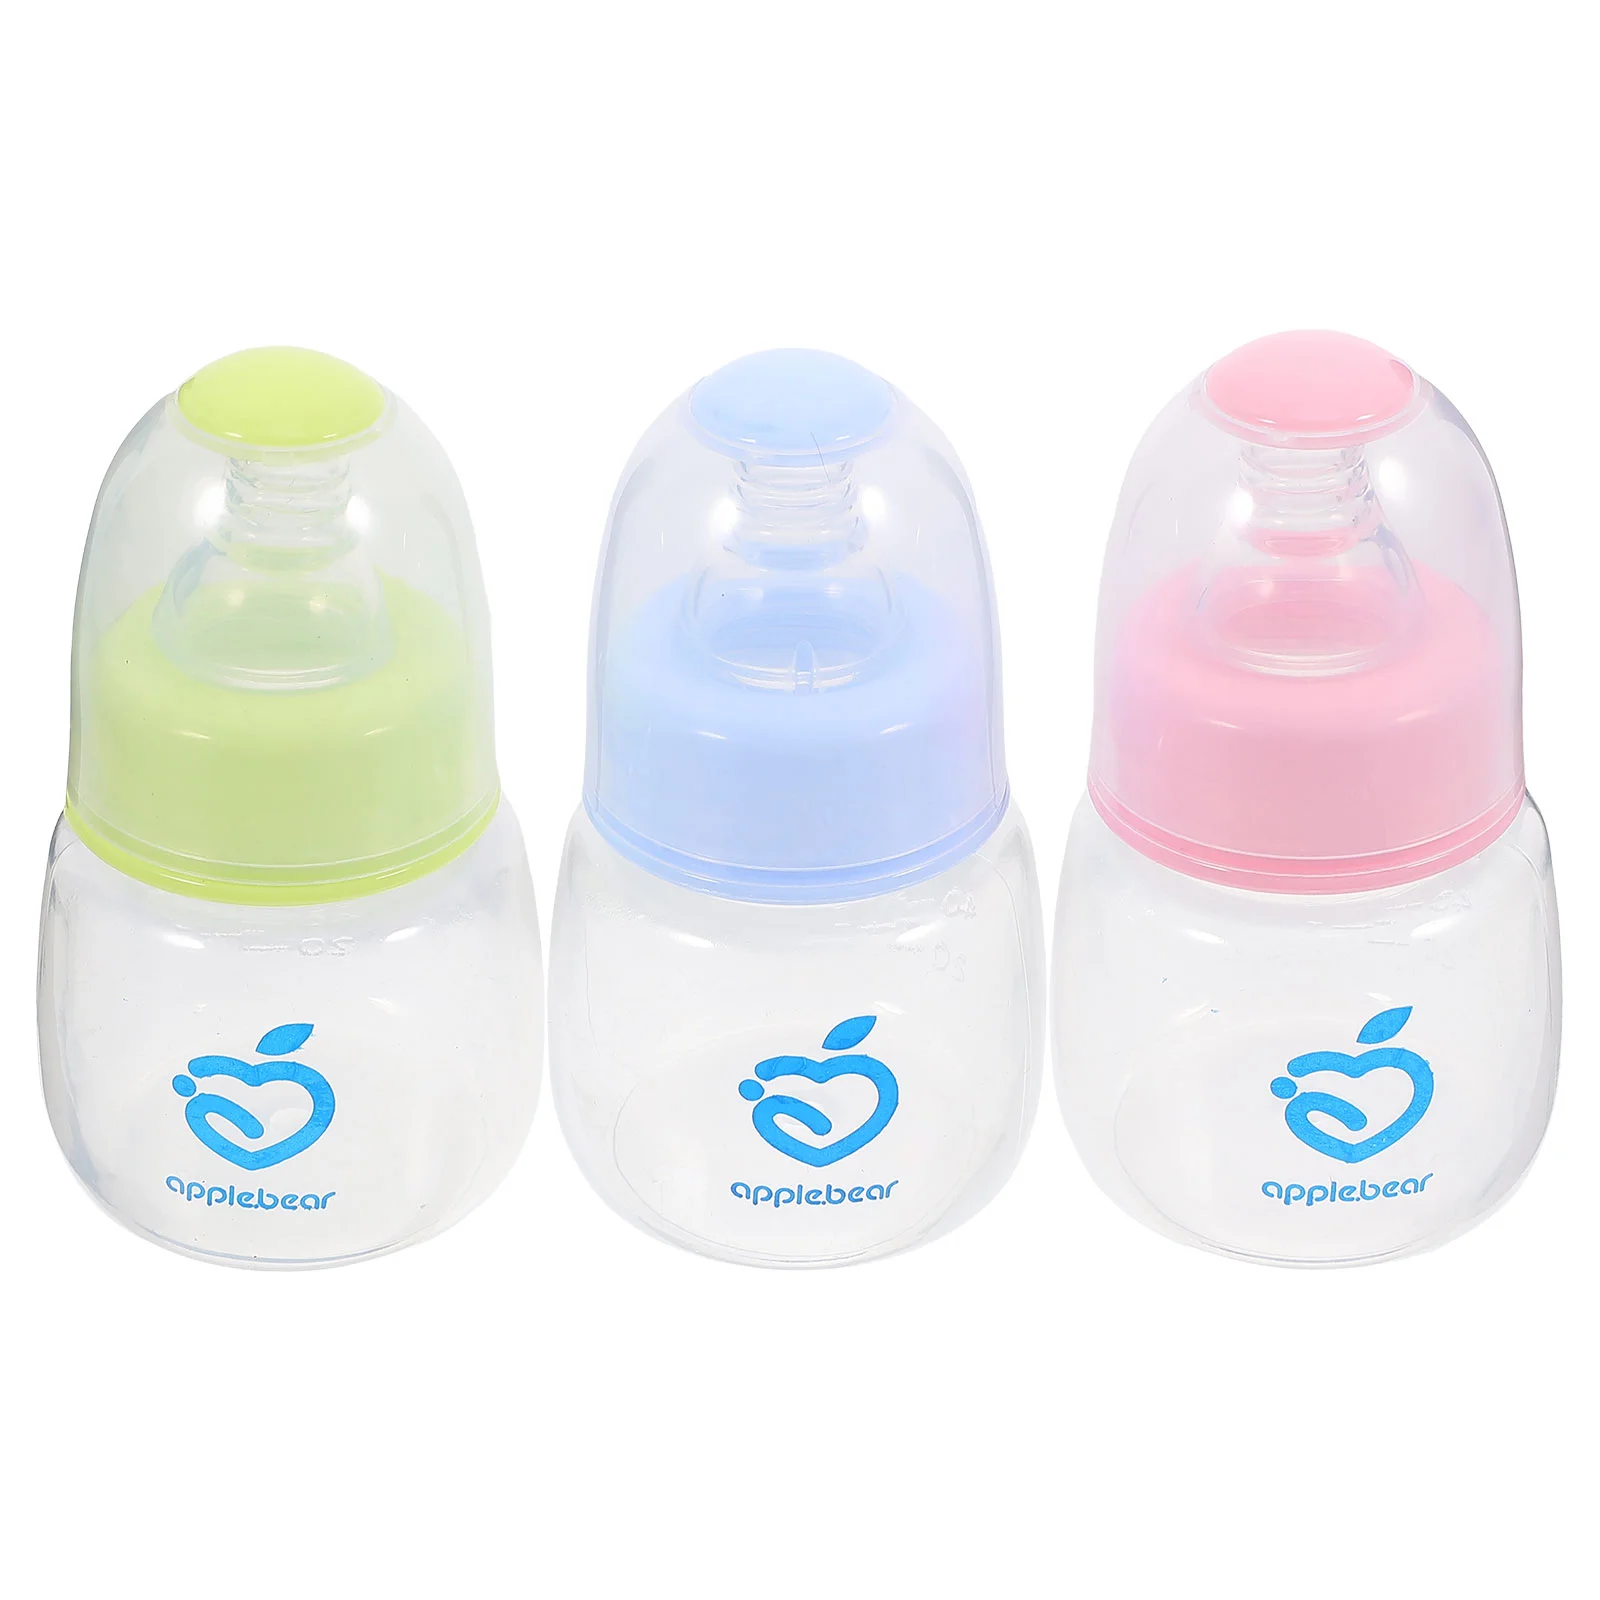 

3 Pcs Feeding Bottle Plastic Baby Rice Cereal Miniature Feeder Pp Infant Nursing Kids Travel Feeding-